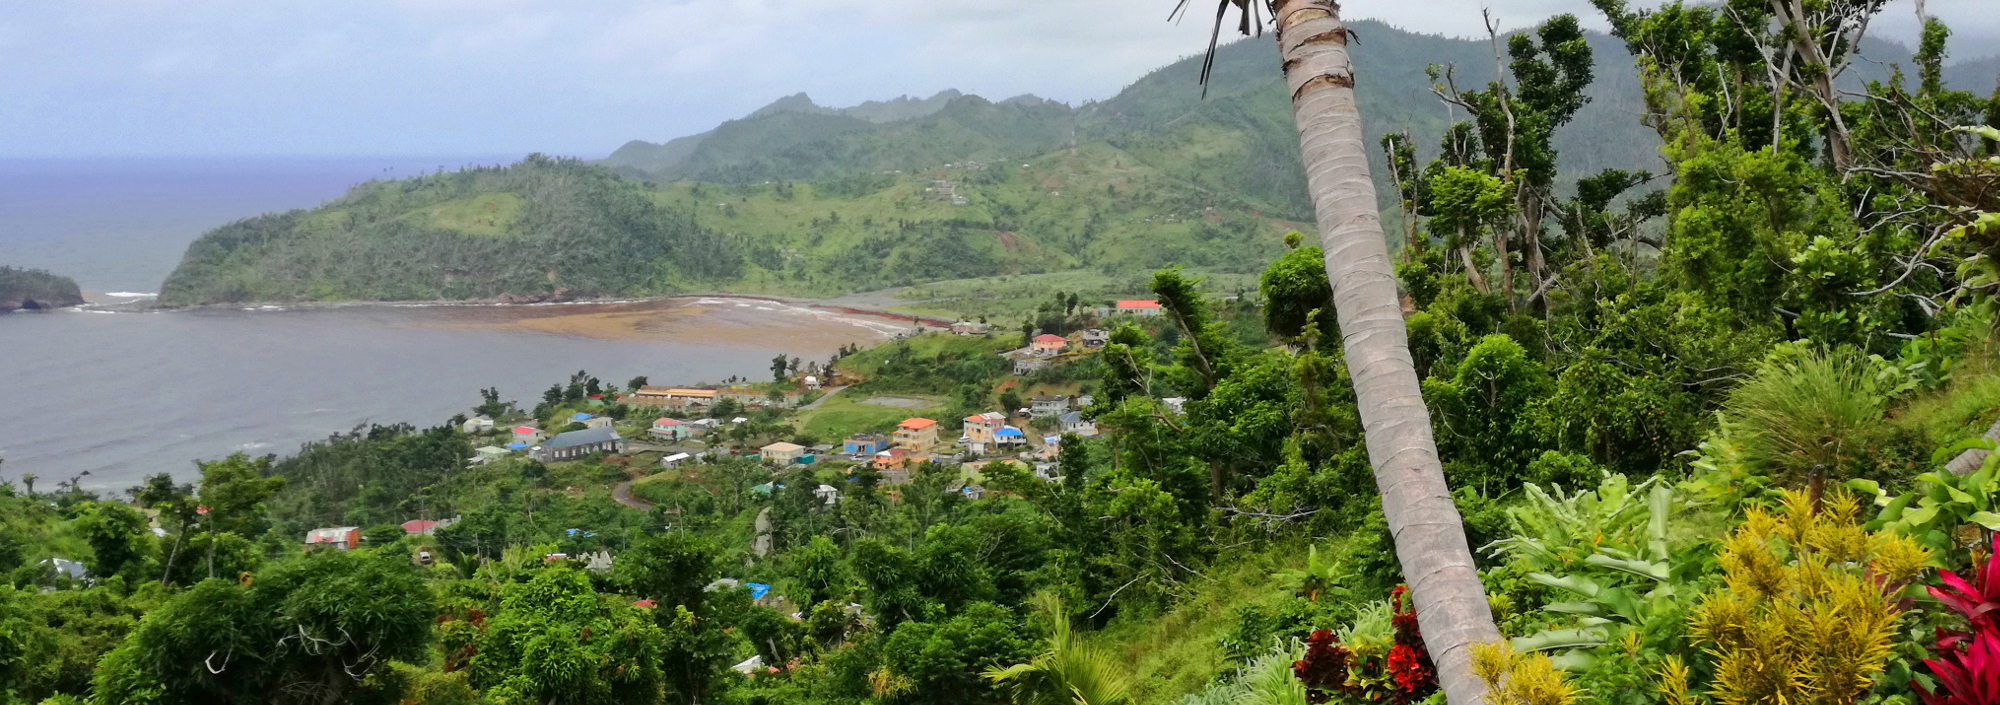 Blick auf die Westküste Dominicas mit erstem Grün nach dem Hurrikan 2017